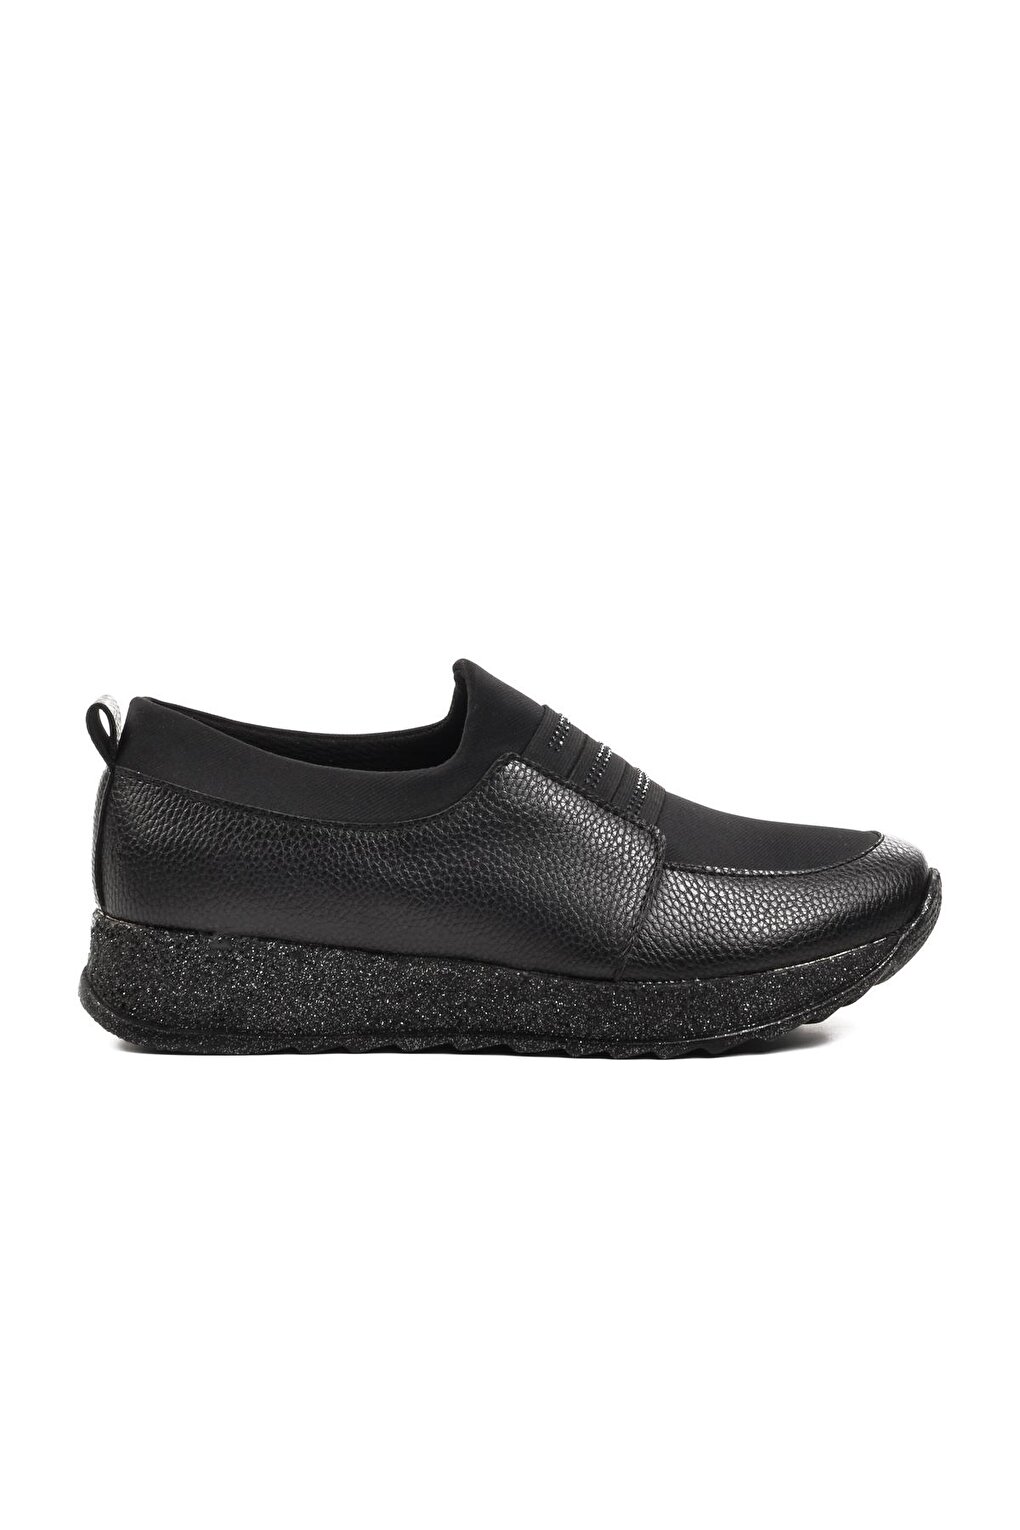 Spr024 Черные женские классические туфли Ayakmod цена и фото